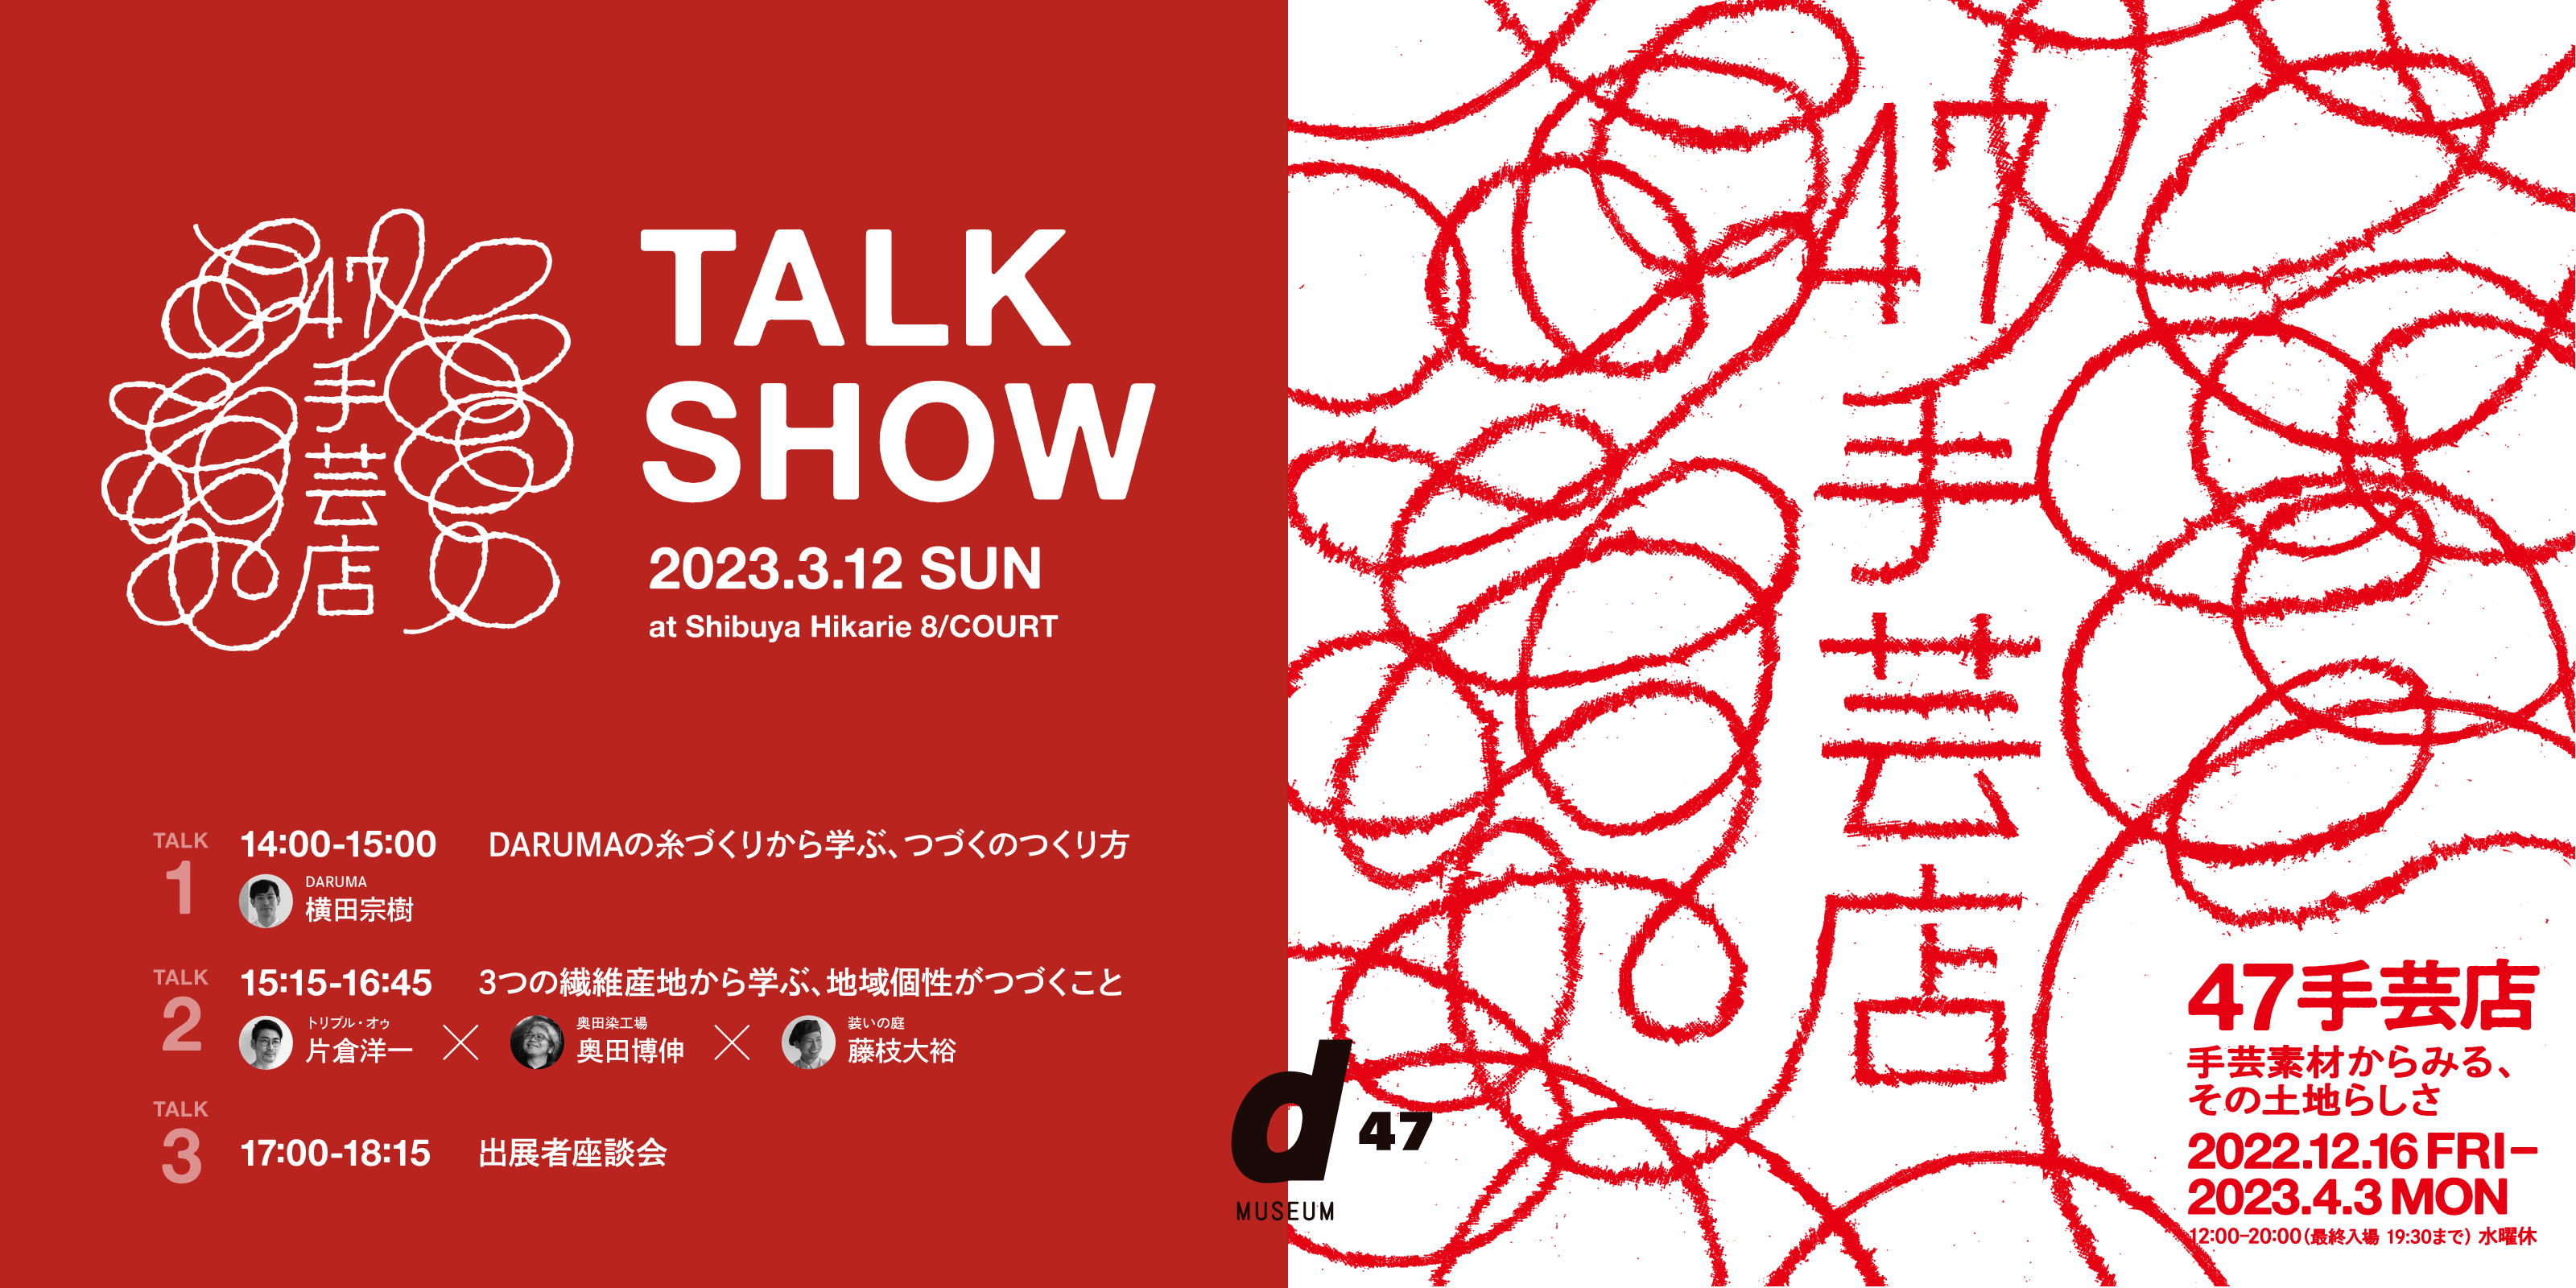 【TALK 3のみ】47手芸店 TALK SHOW